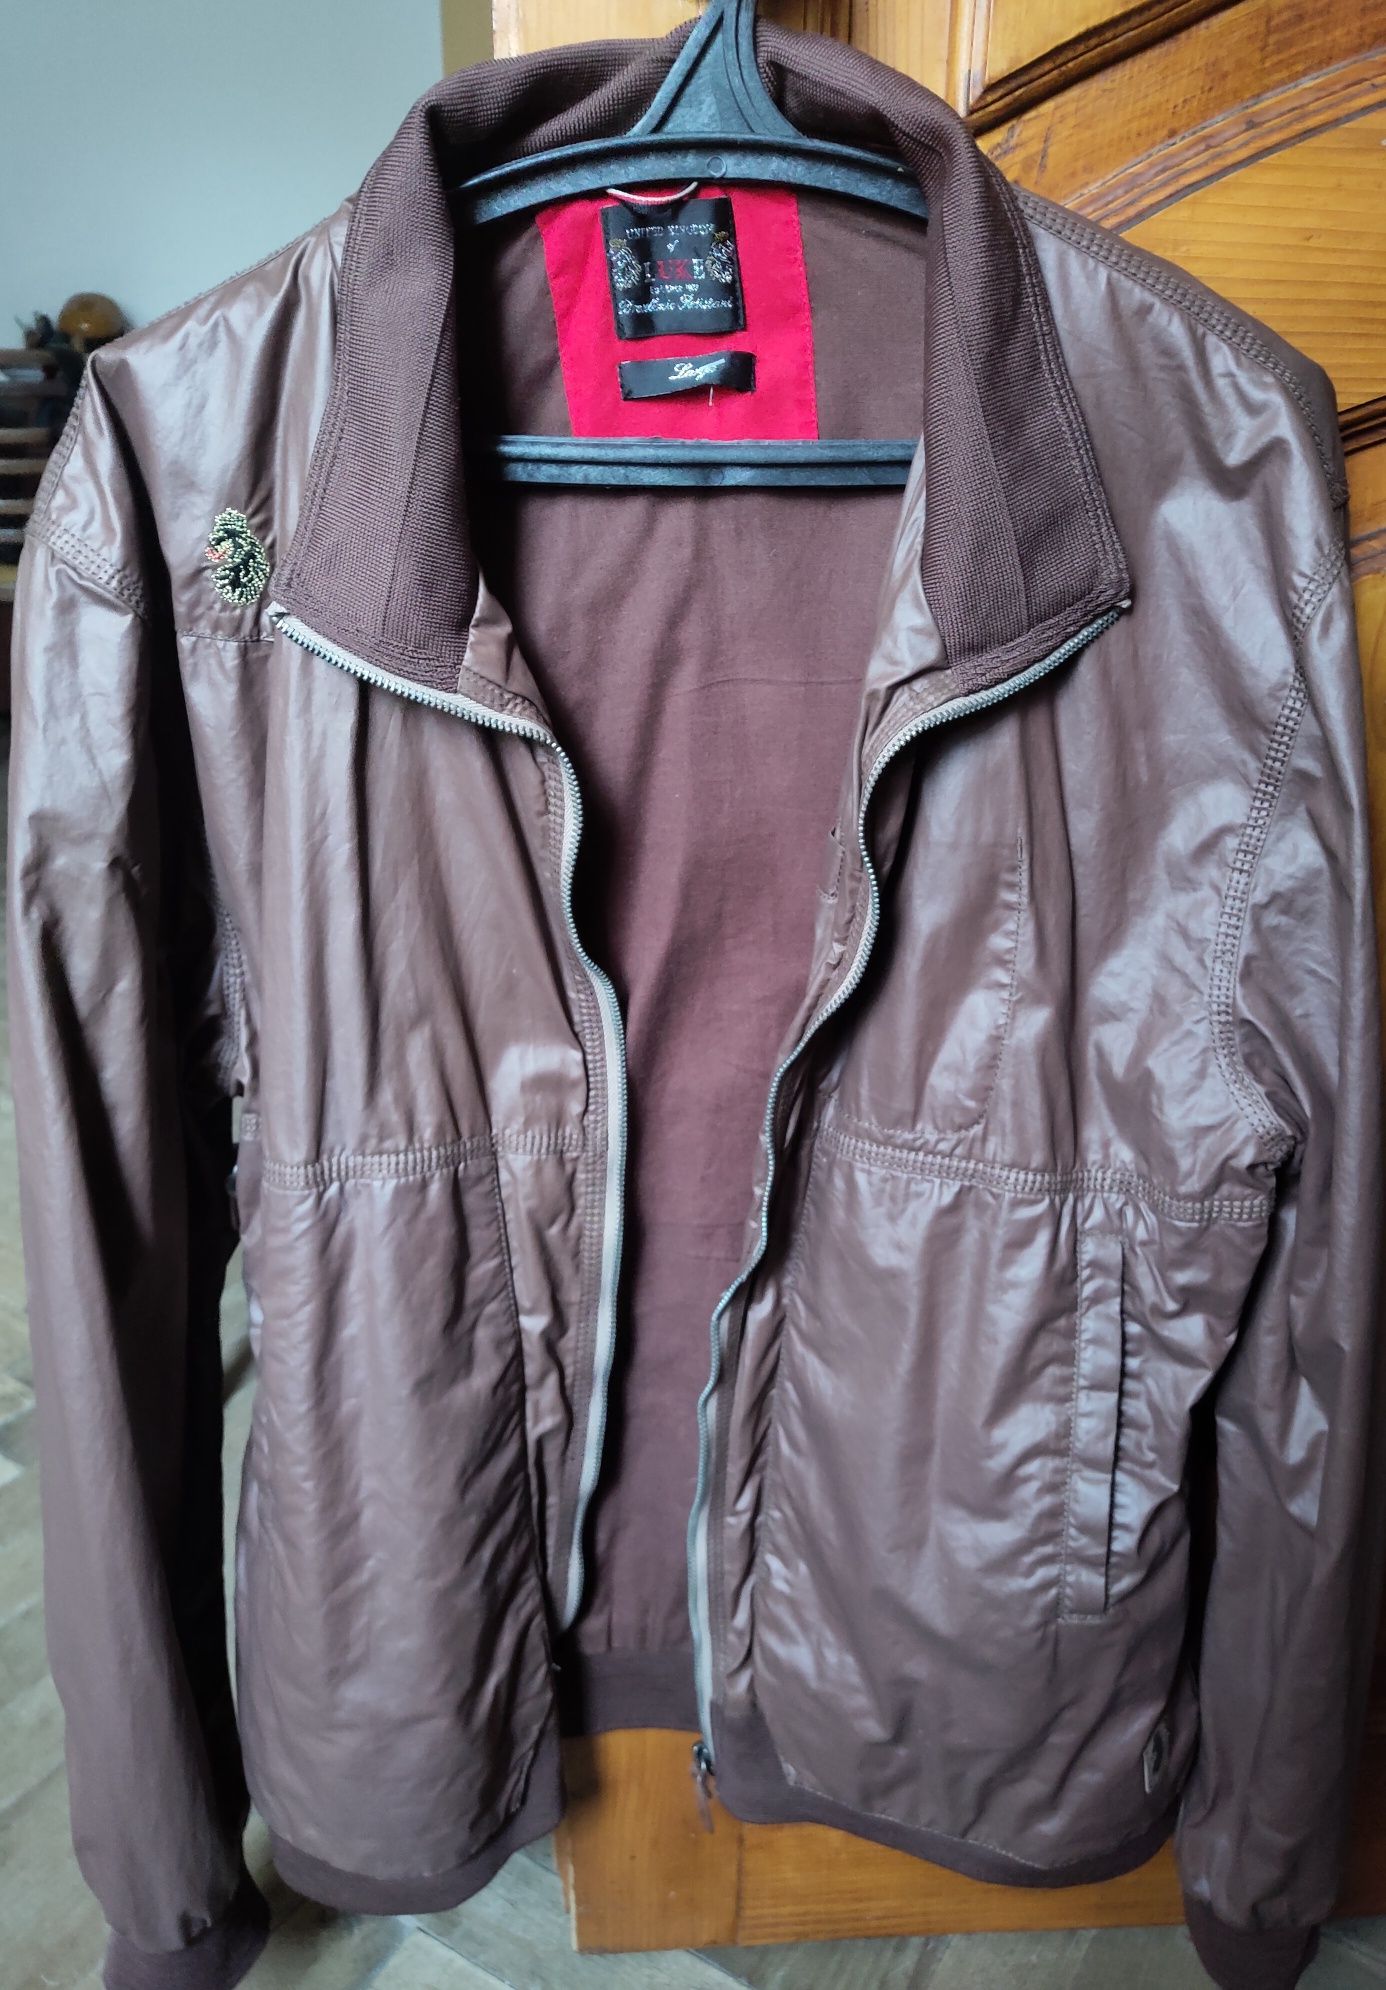 Осіння куртка, бомбер шоколадного/коричневого кольору